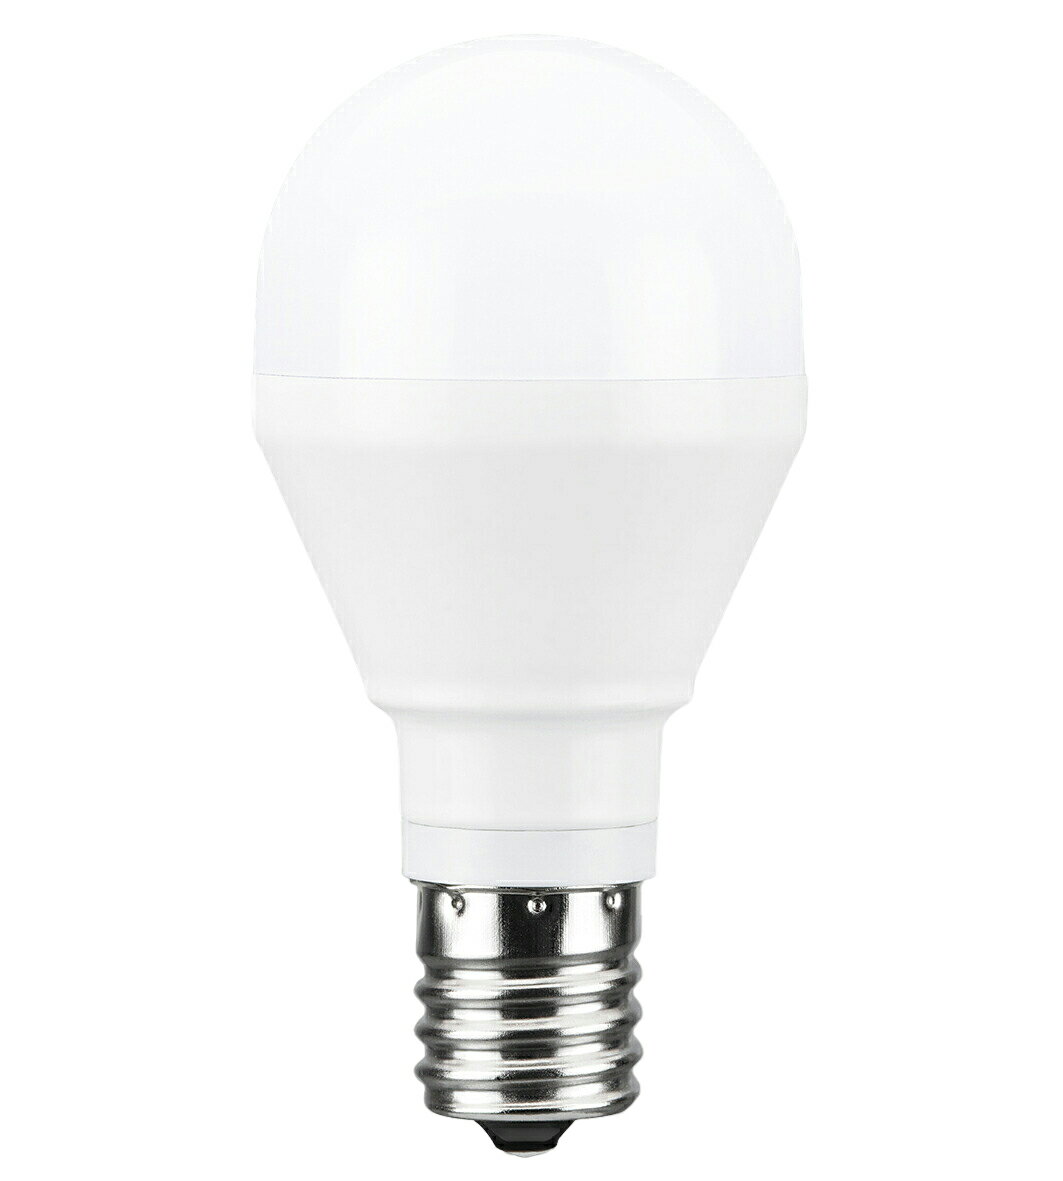 東芝ライテック LED電球 ミニクリプトン形 LED電球 E17 電球色 2700K 760 lm